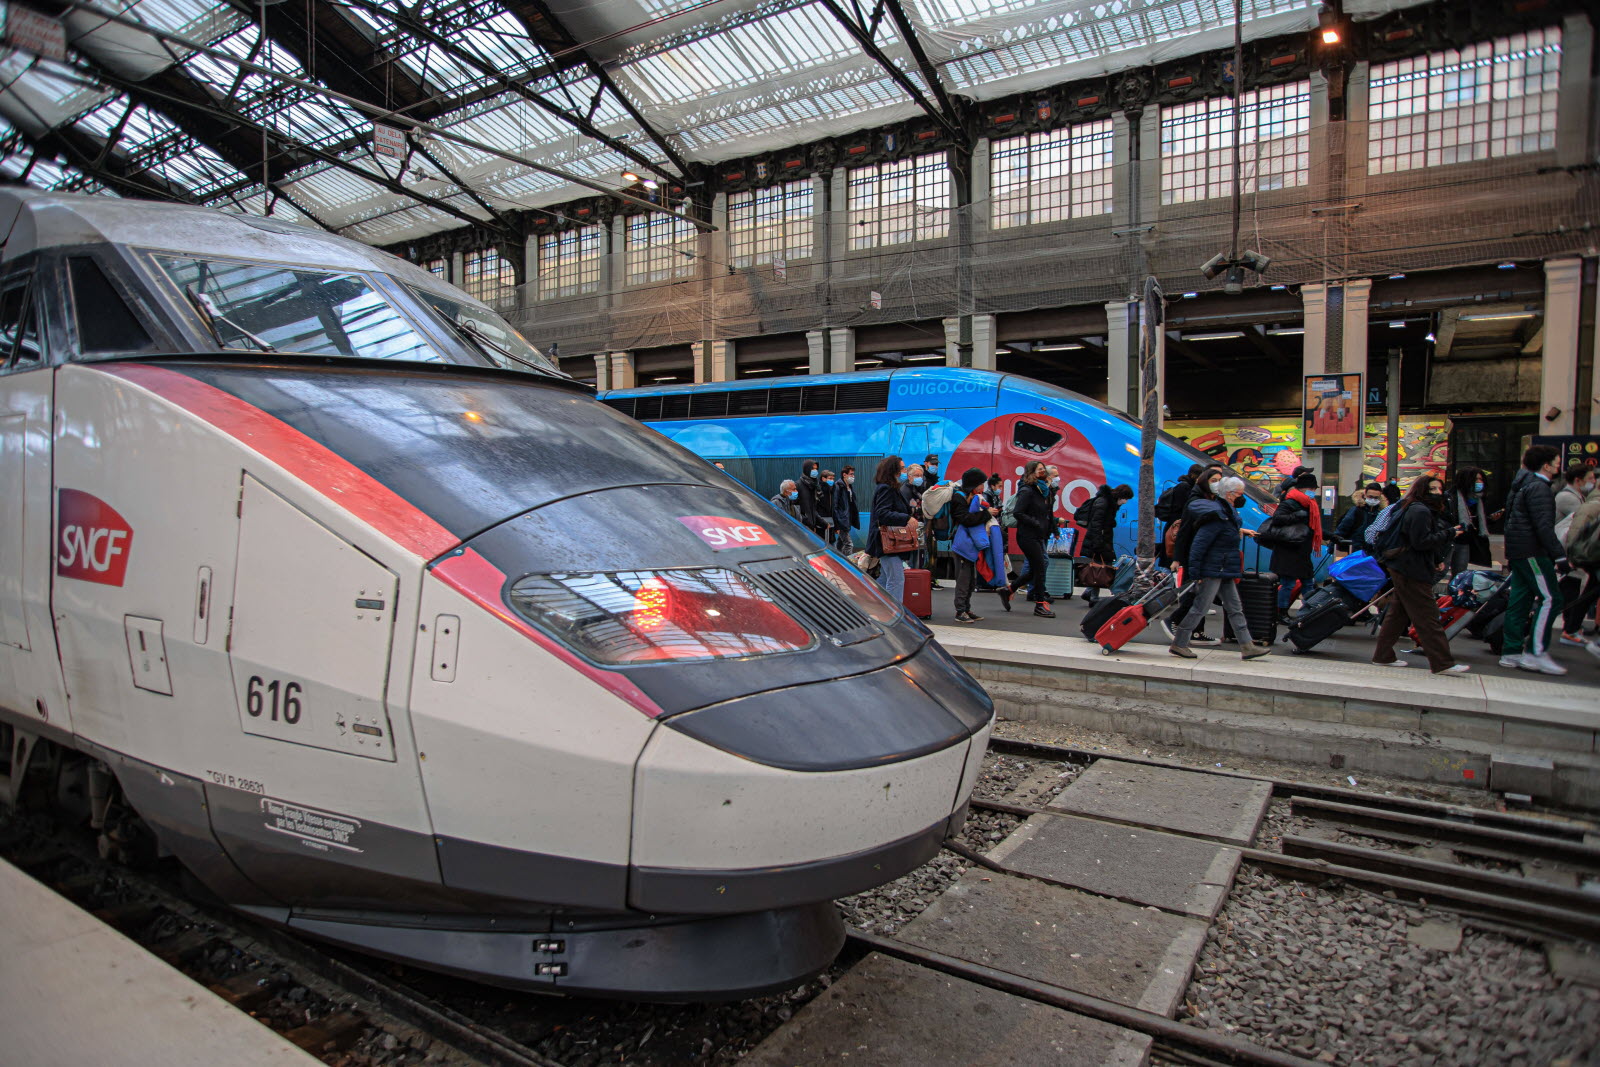 Voici pourquoi changer de train à Paris vers le sud est devenu un véritable casse-tête